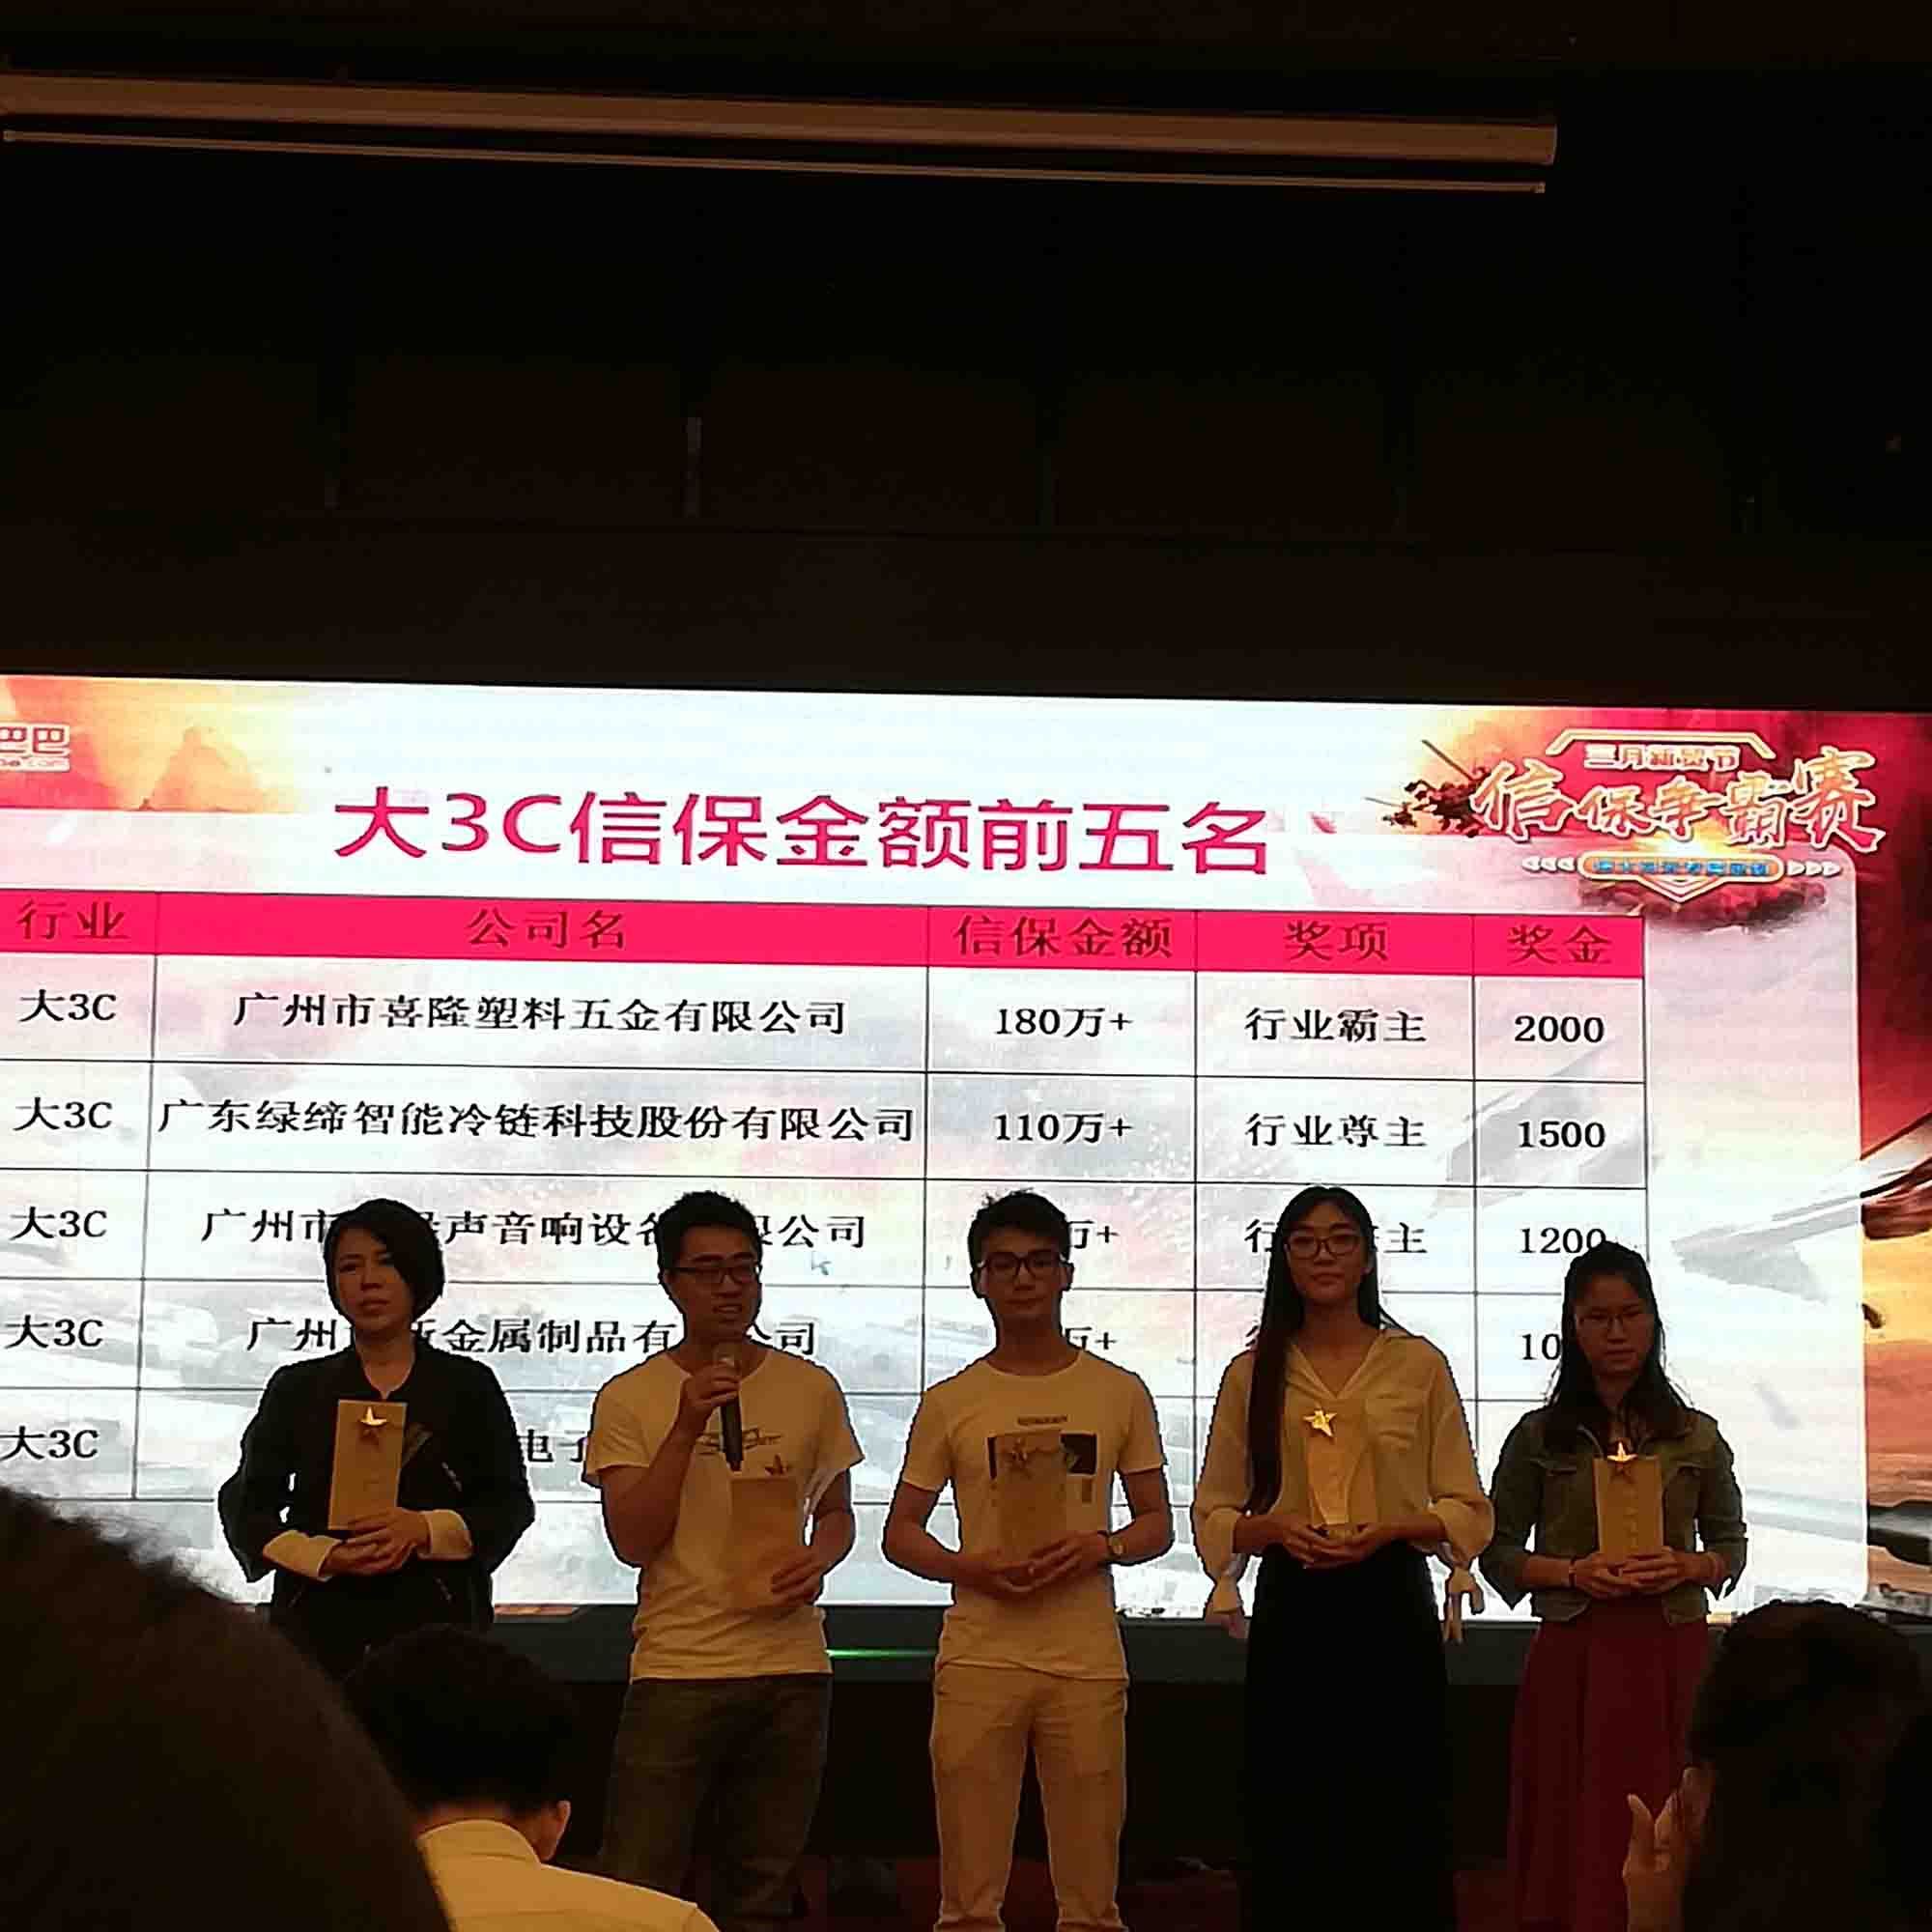 Congratulazioni alla nostra compagnia Ottenuto il terzo posto nella competizione di assicurazione commerciale Alibaba